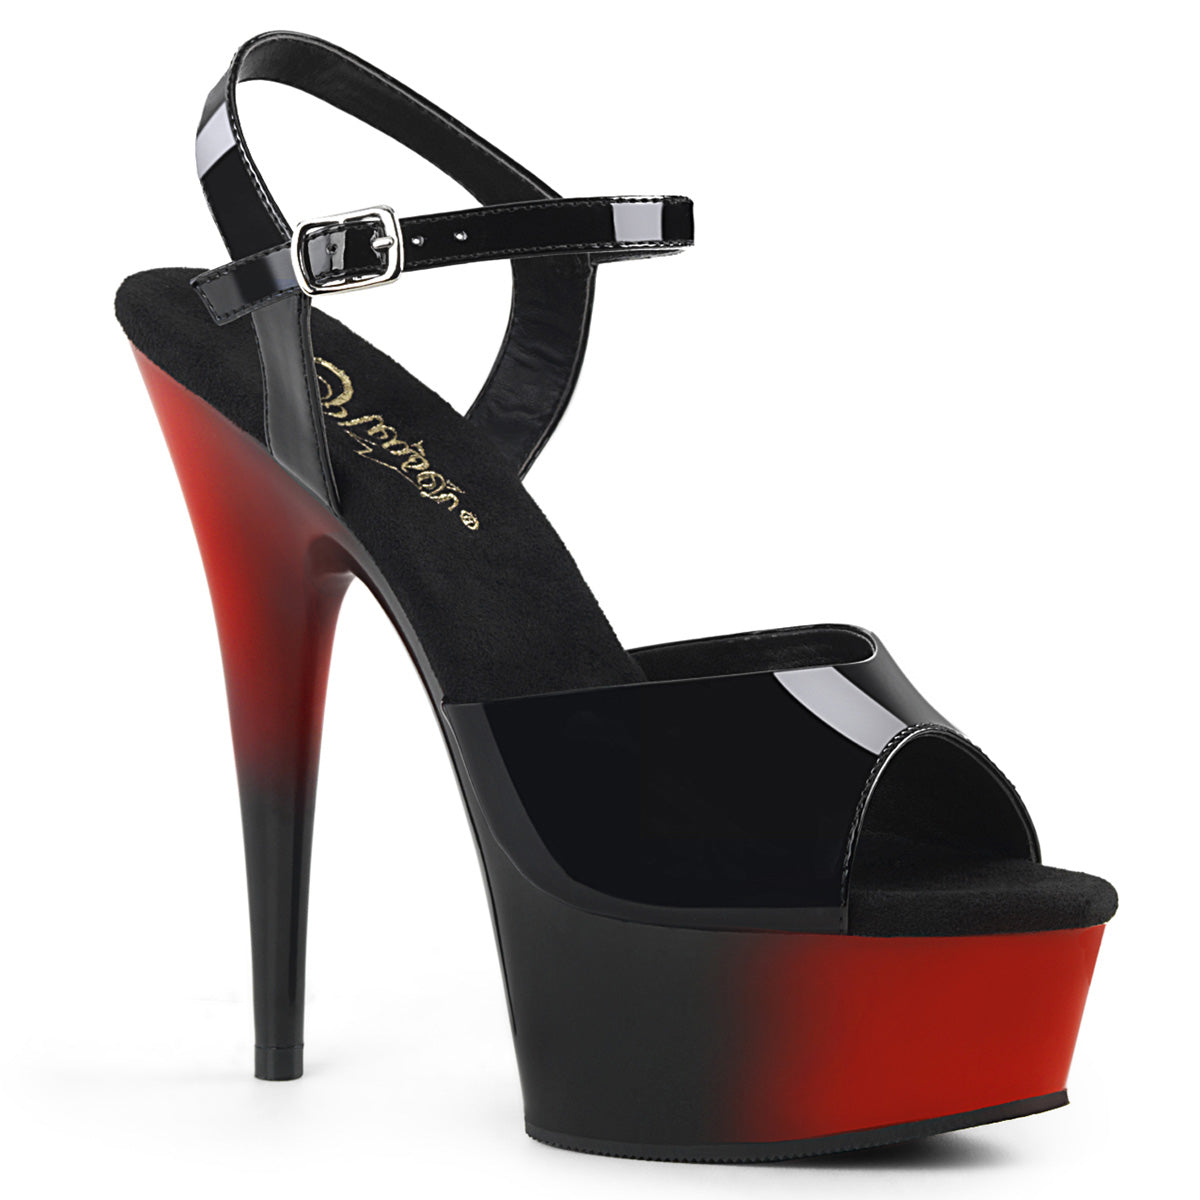 DELIGHT-609BR Black Patent/Red-Black Platform Sandal